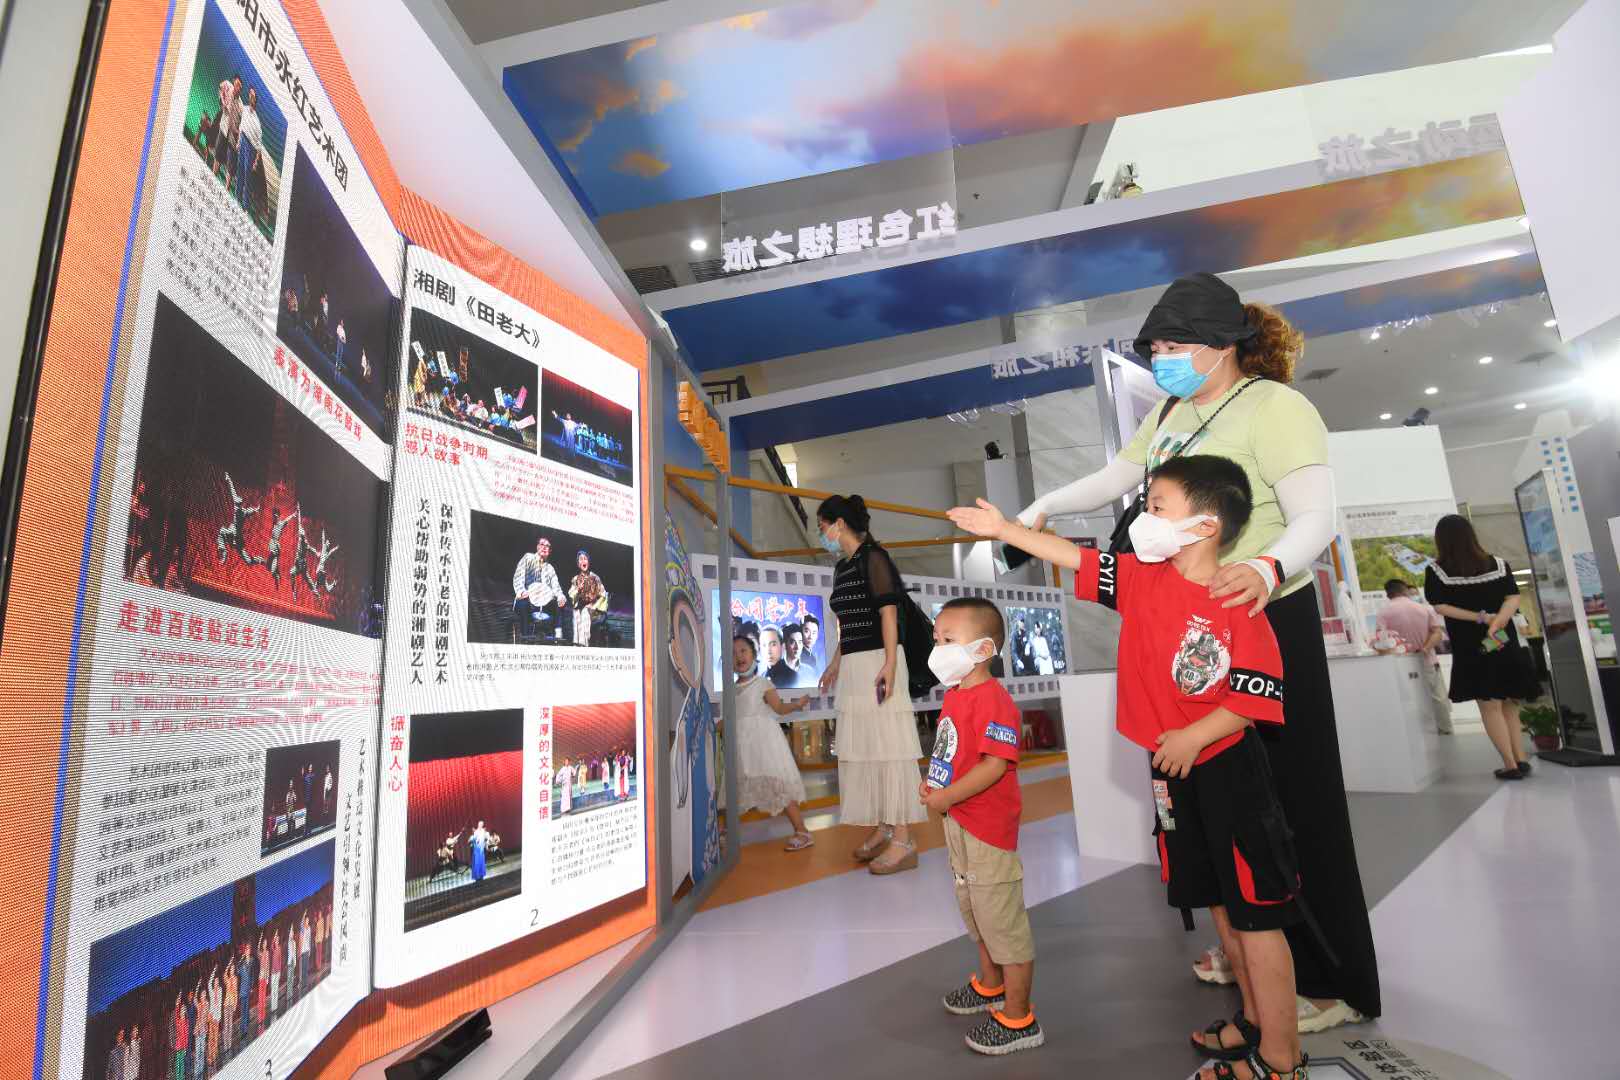 弘扬红色文化 助推文旅升温 湘潭举办首届红色文化产业博览会